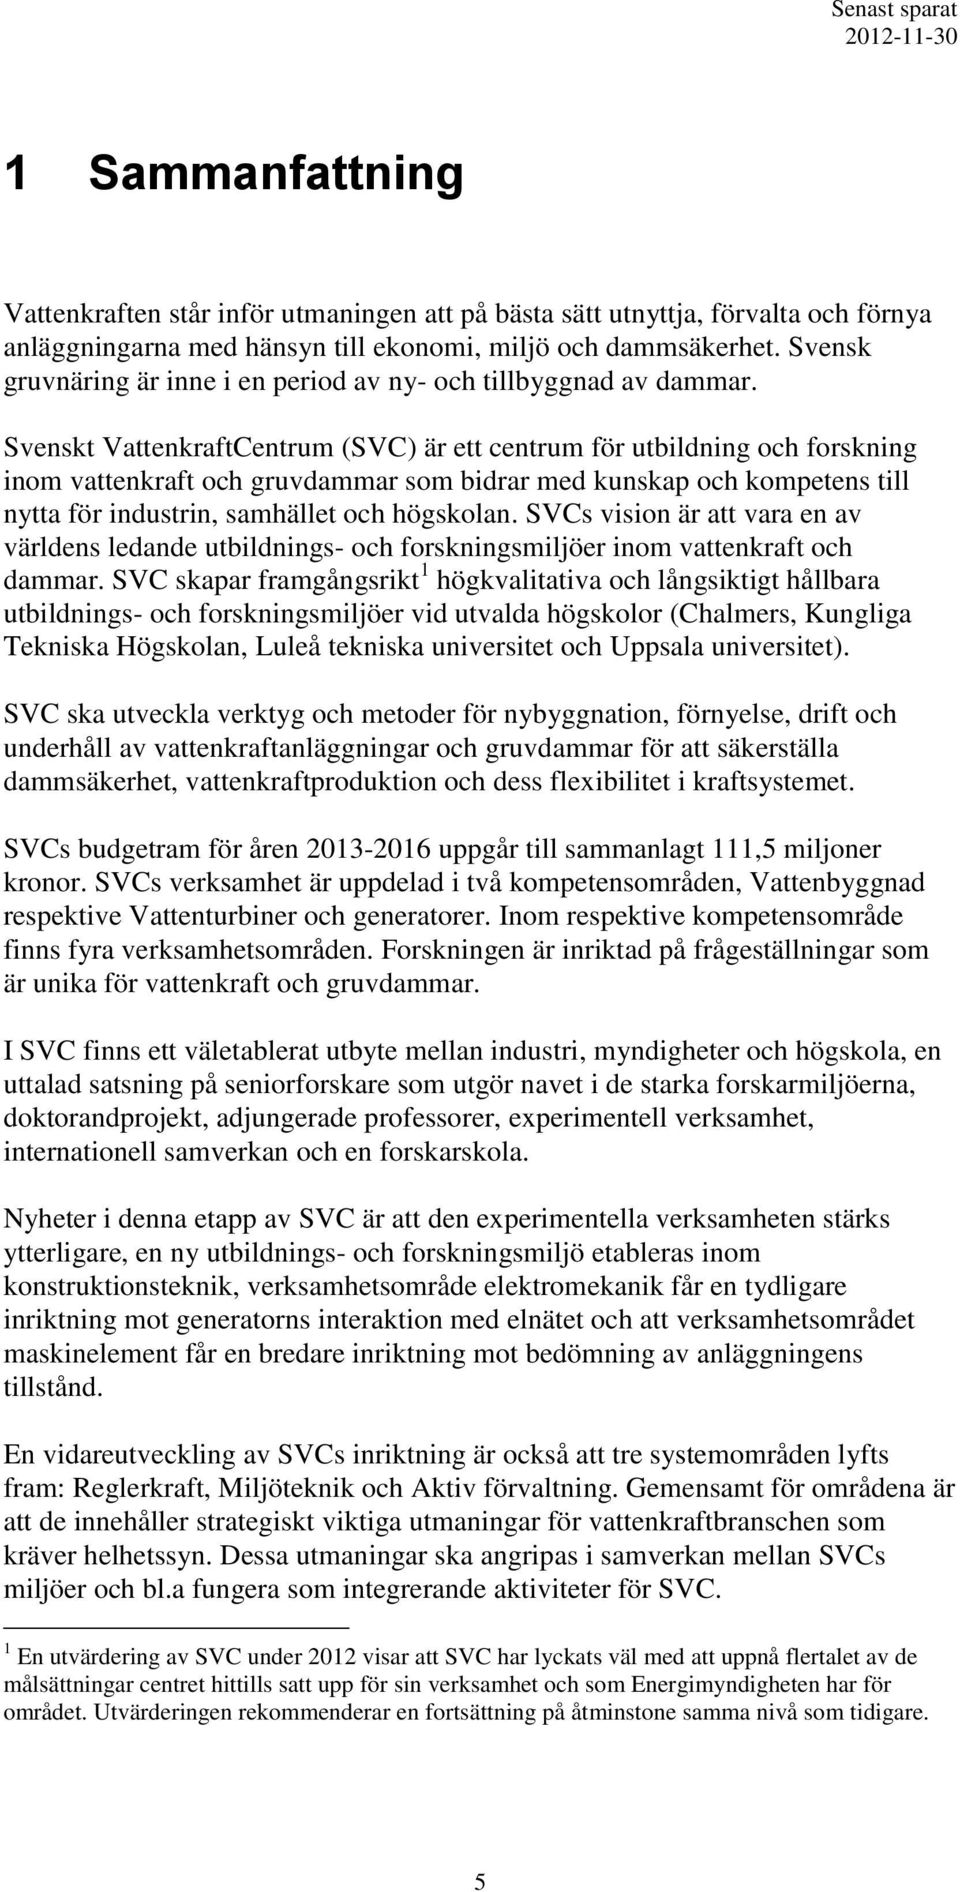 Svenskt VattenkraftCentrum (SVC) är ett centrum för utbildning och forskning inom vattenkraft och gruvdammar som bidrar med kunskap och kompetens till nytta för industrin, samhället och högskolan.